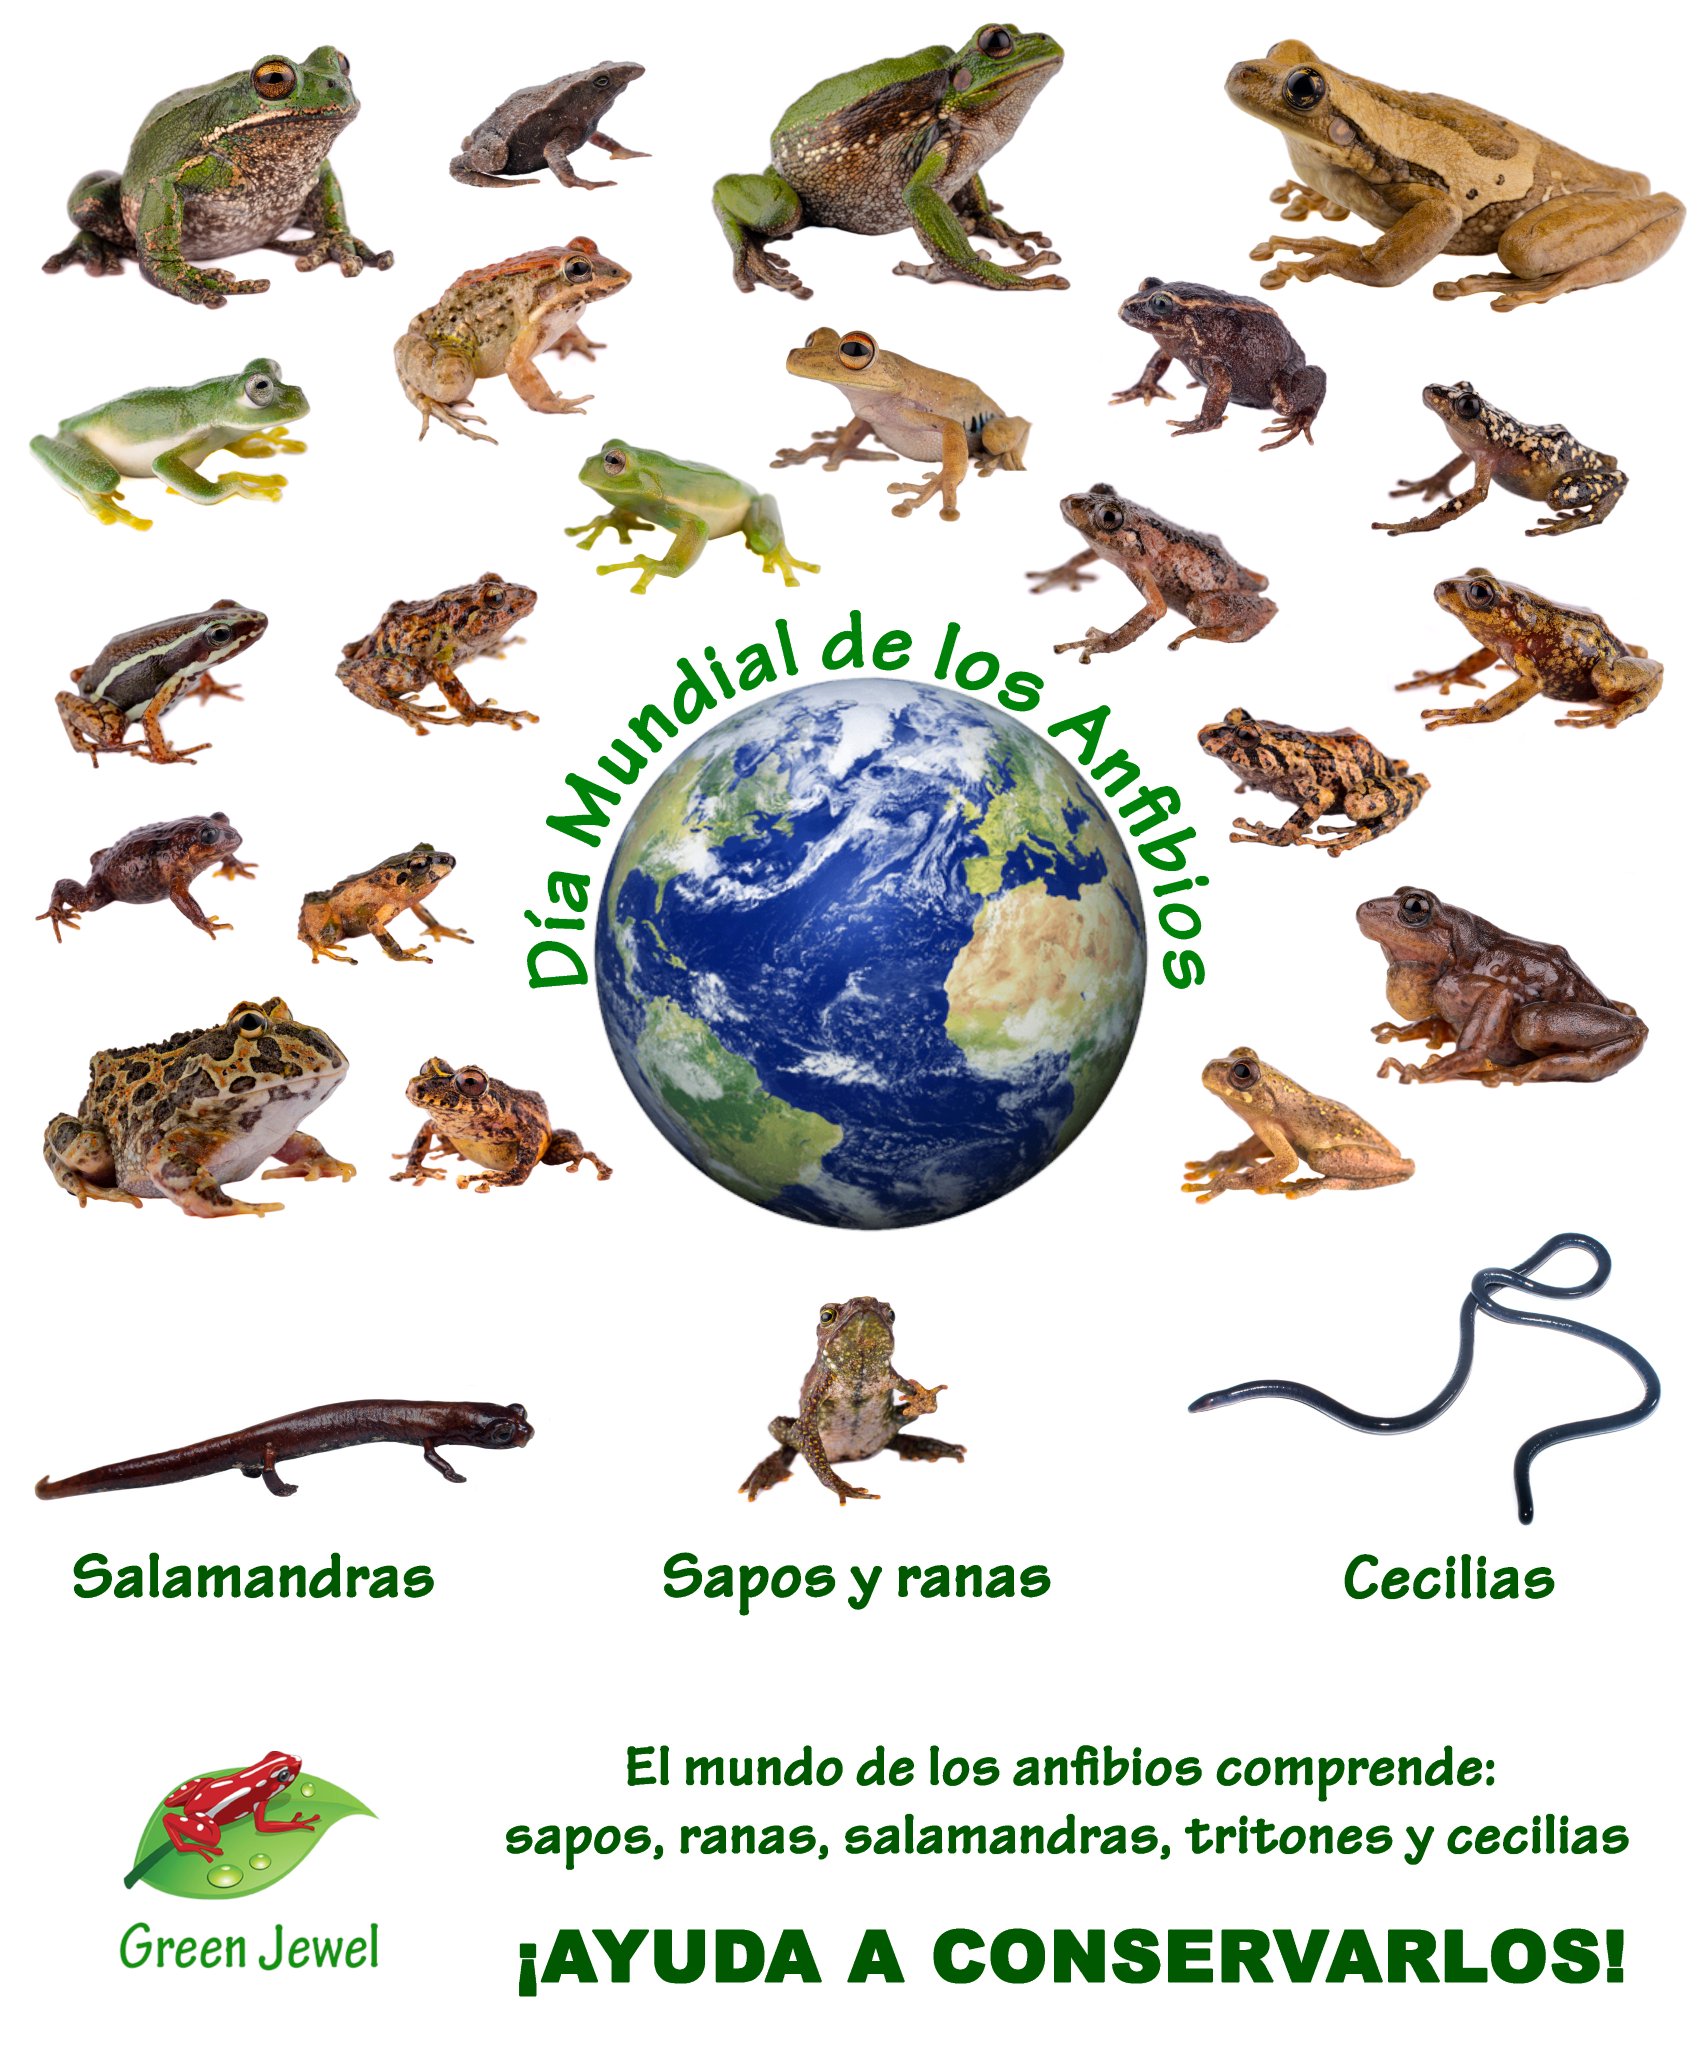 director Clasificación No esencial Grupo Green Jewel on Twitter: "DÍA MUNDIAL DE LOS ANFIBIOS El mundo de los  anfibios comprende: sapos, ranas, salamandras, tritones y cecilias. ¡AYUDA  A CONSERVARLOS! #DíaMundialDeLosAnfibios #Sapos #Ranas #Salamandras  #Tritones #Cecilias #GreenJewel